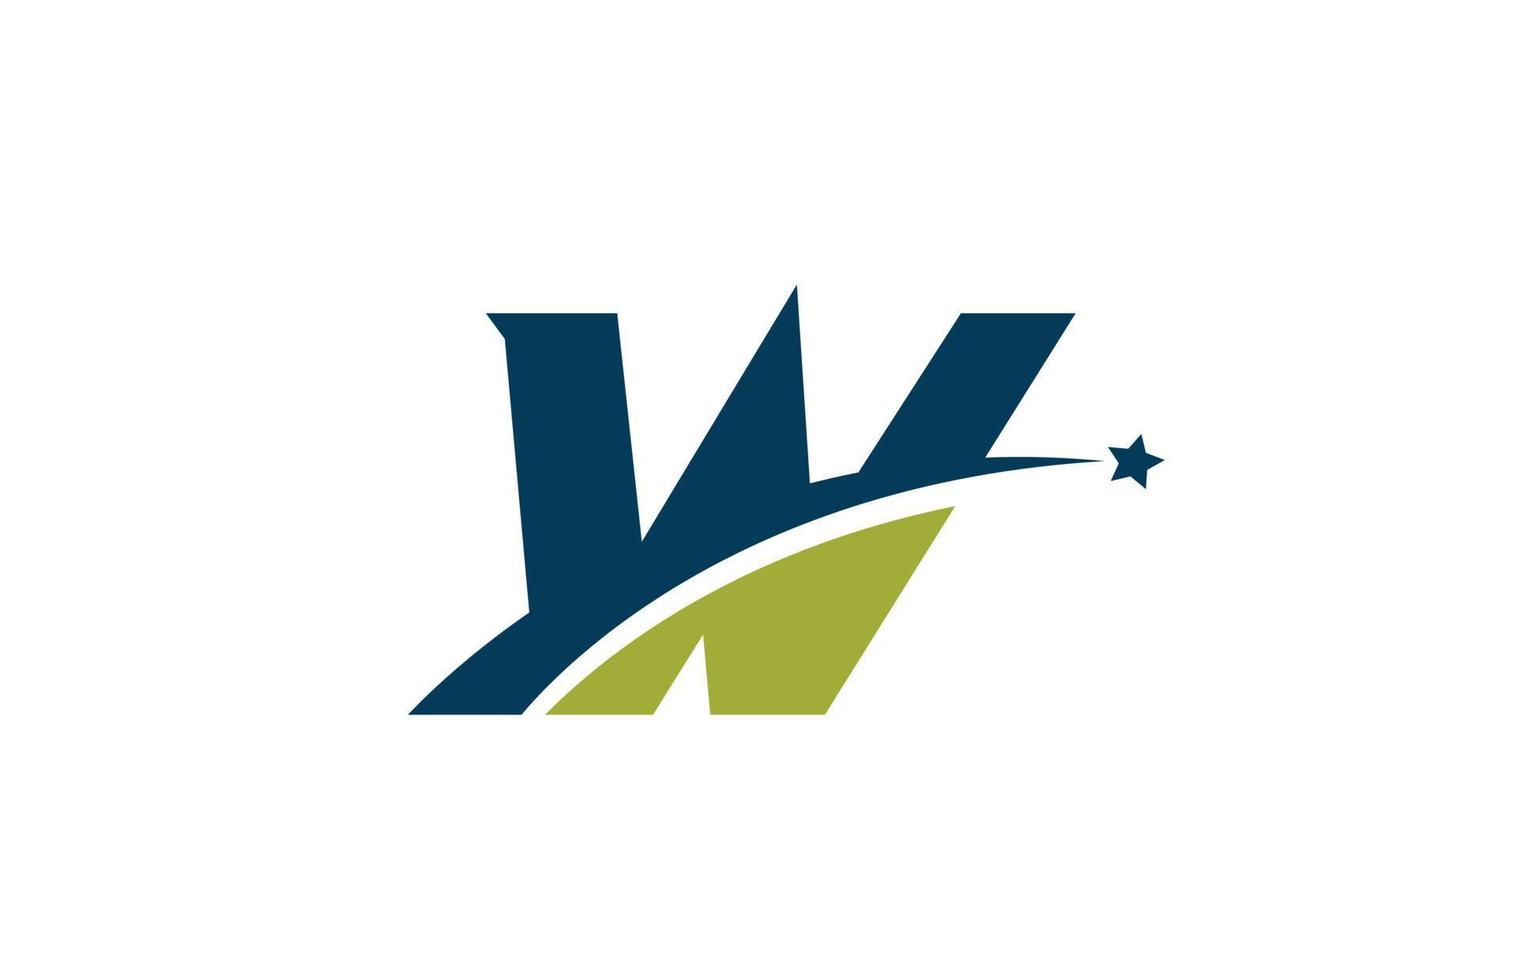 blauw groen w alfabet letterpictogram logo met ster. creatief ontwerp voor bedrijf of bedrijf met swoosh vector